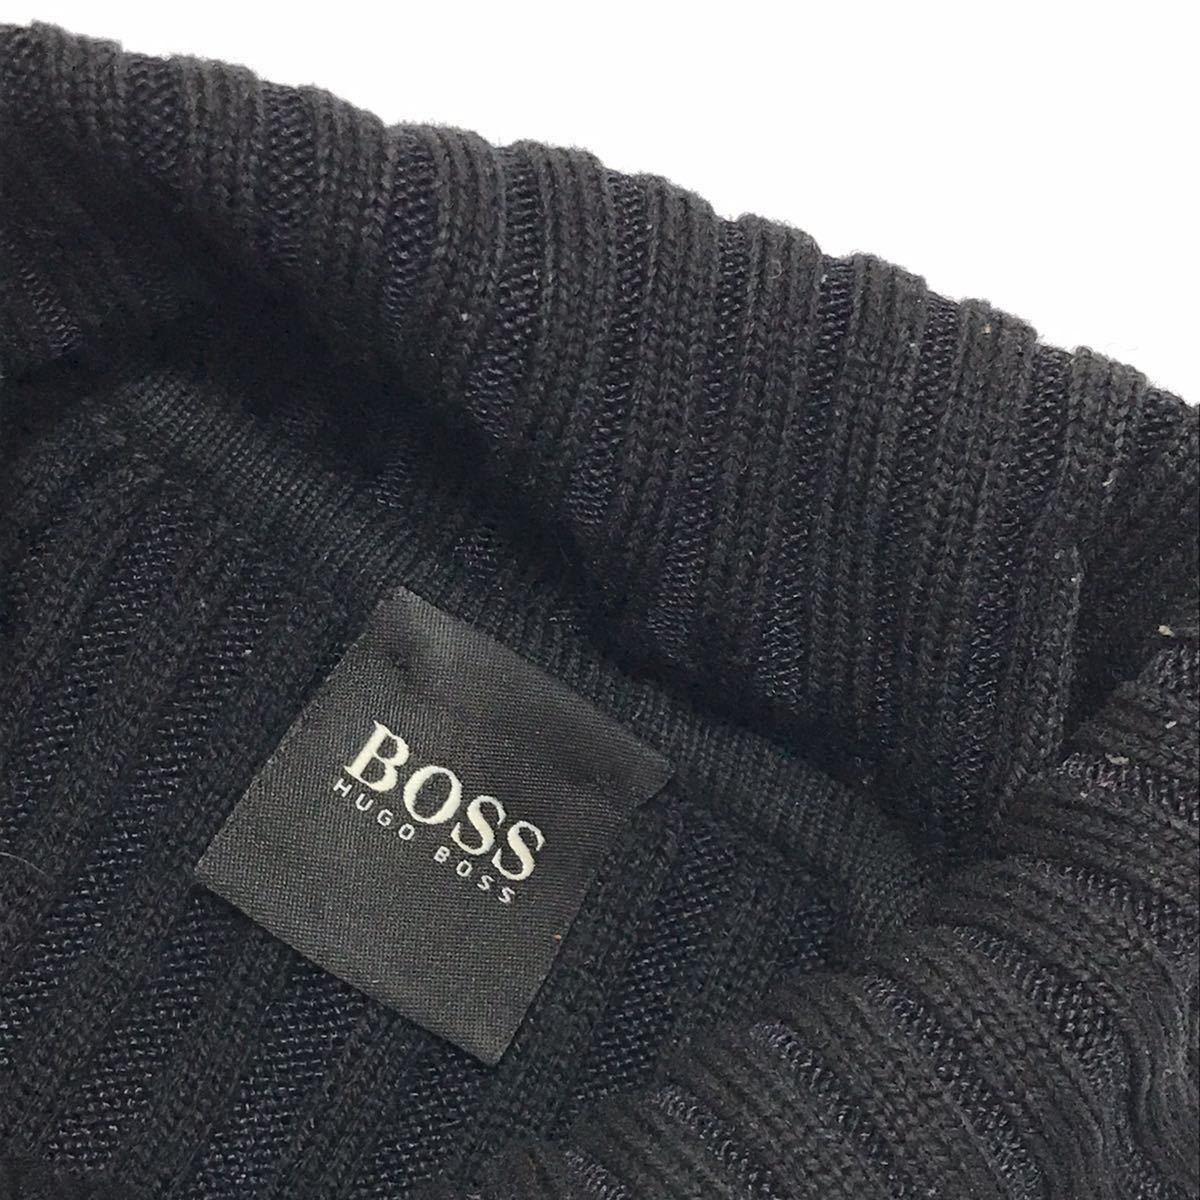 【ヒューゴボス】本物 HUGO BOSS タートルネック ニット セーター トップス サイズS バージンウール70%×レーヨン30% 男性用 メンズ_画像3